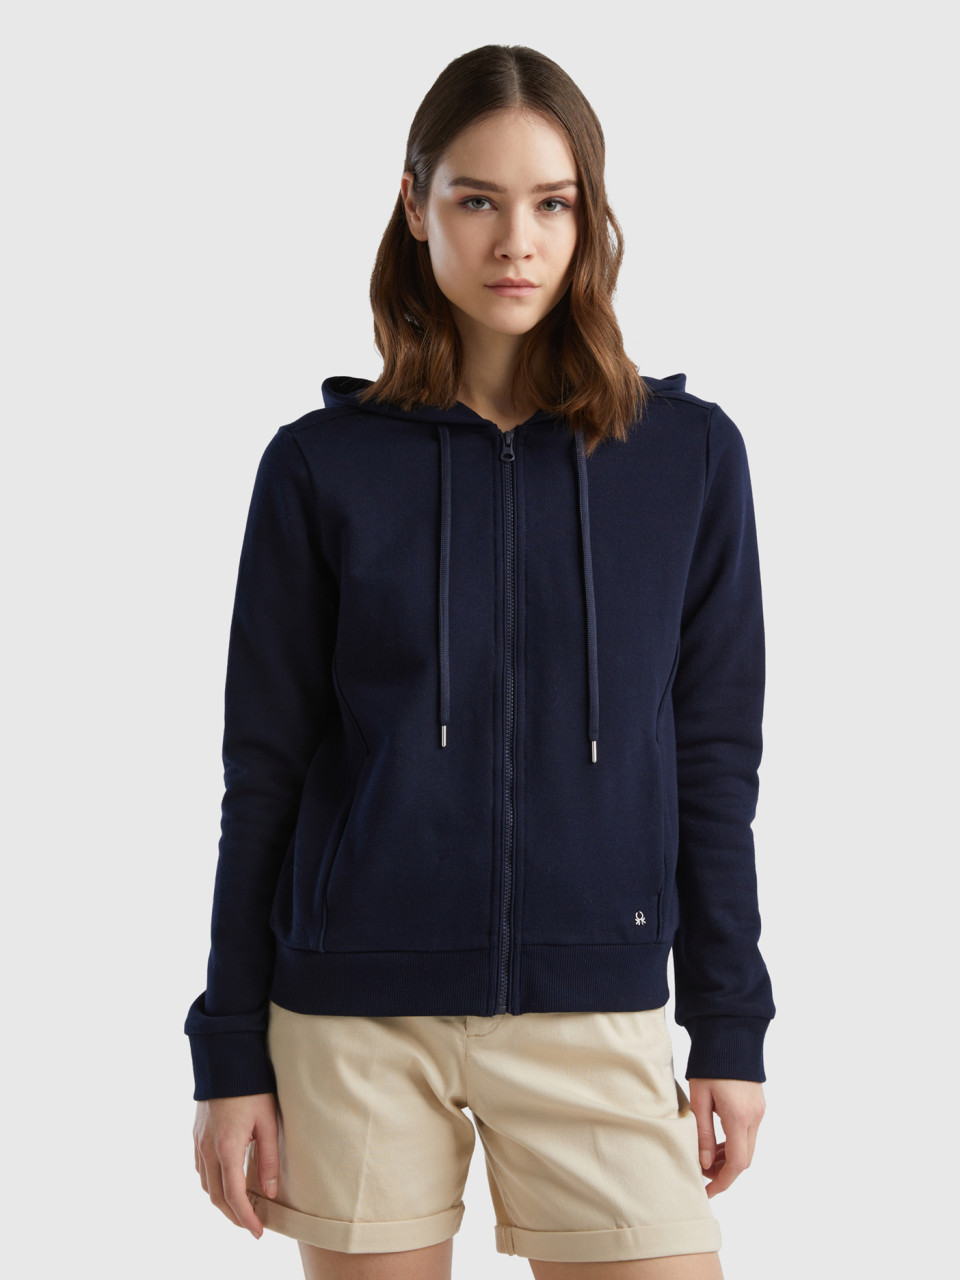 Benetton, 100% Cotton Sweatshirt With Zip And Hood, Dark Blue, Women